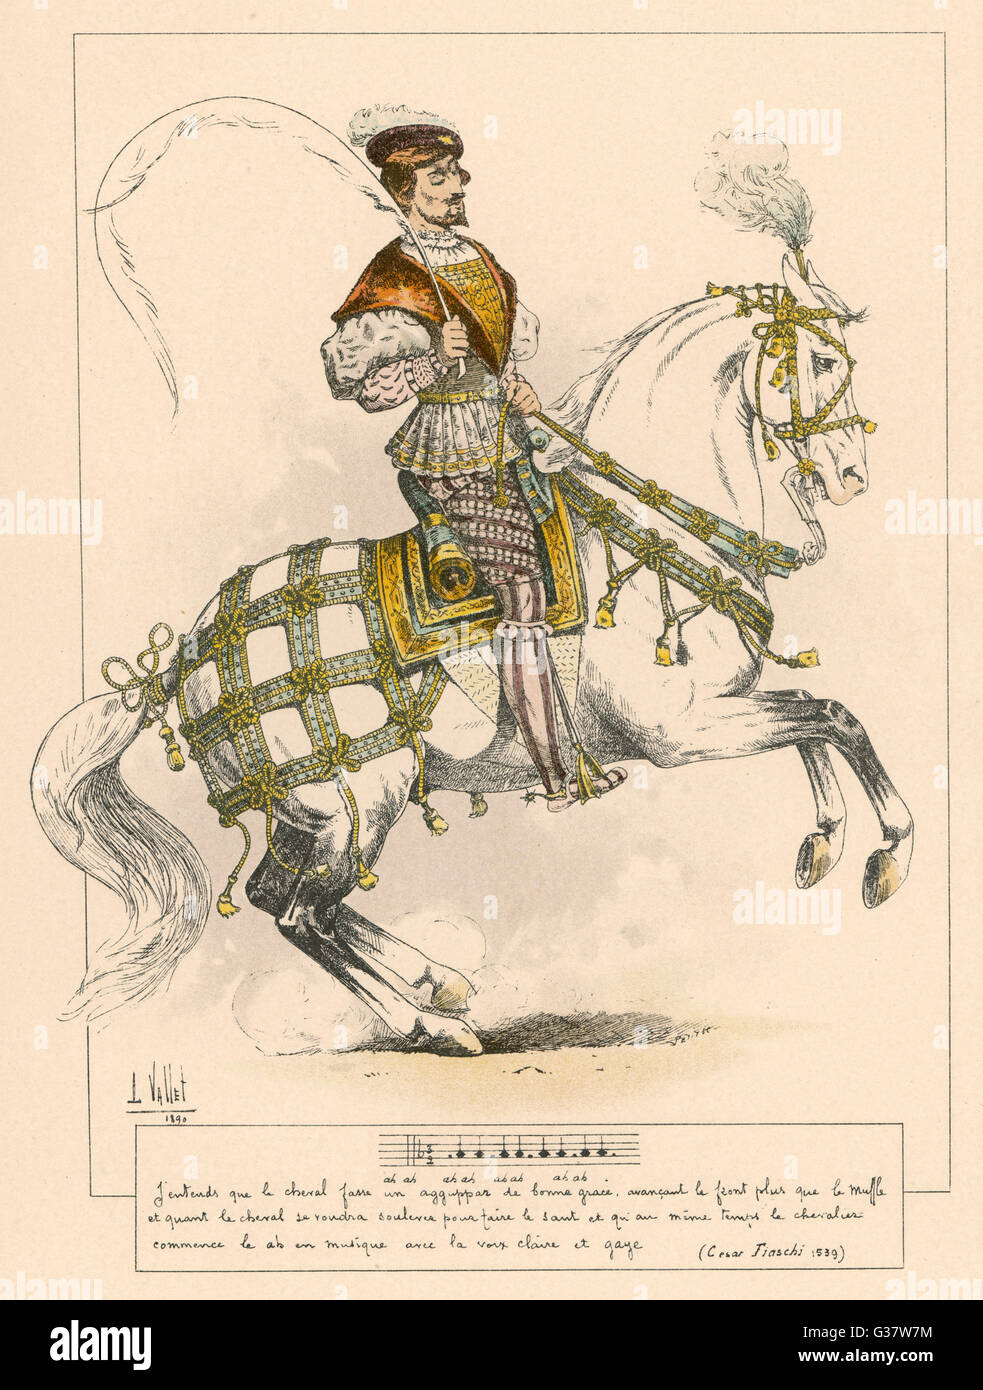 César Fiaschi, Ecuestre Francesa y autor de libros de equitación. Fecha: floreció 1539 Foto de stock